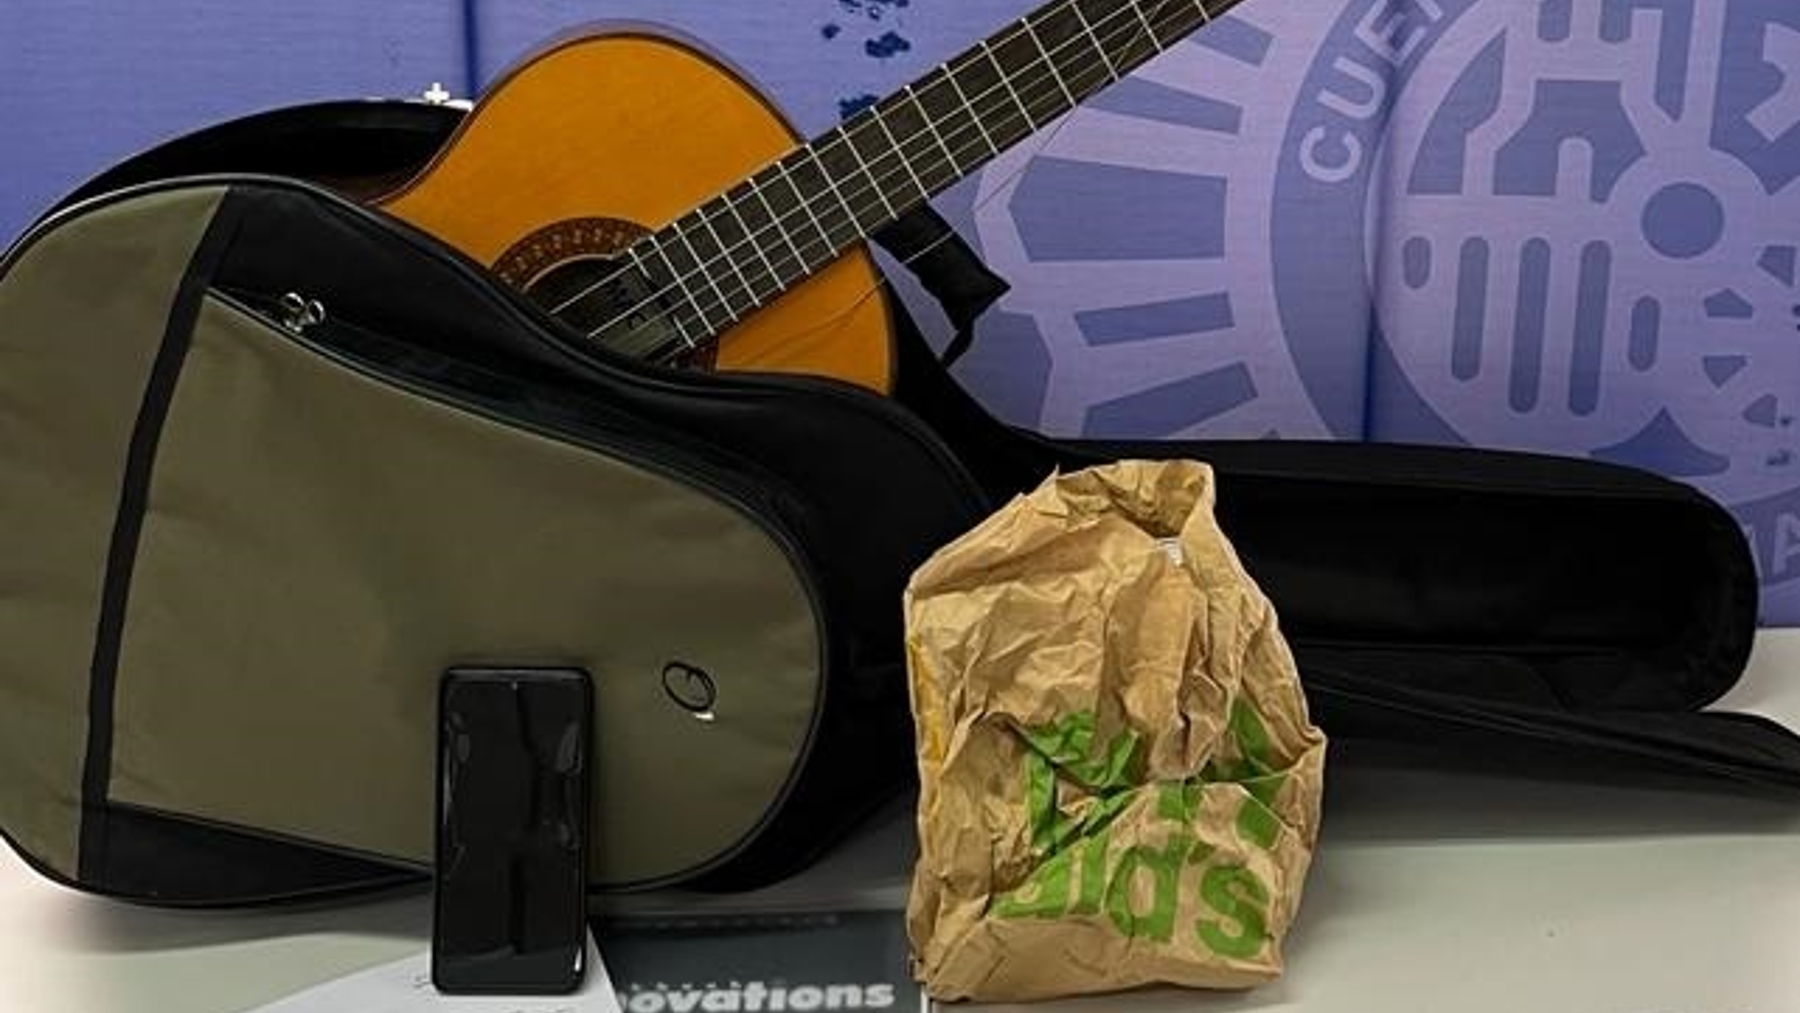 Guitarra, dinero y otros efectos requisados por la Policía Nacional.